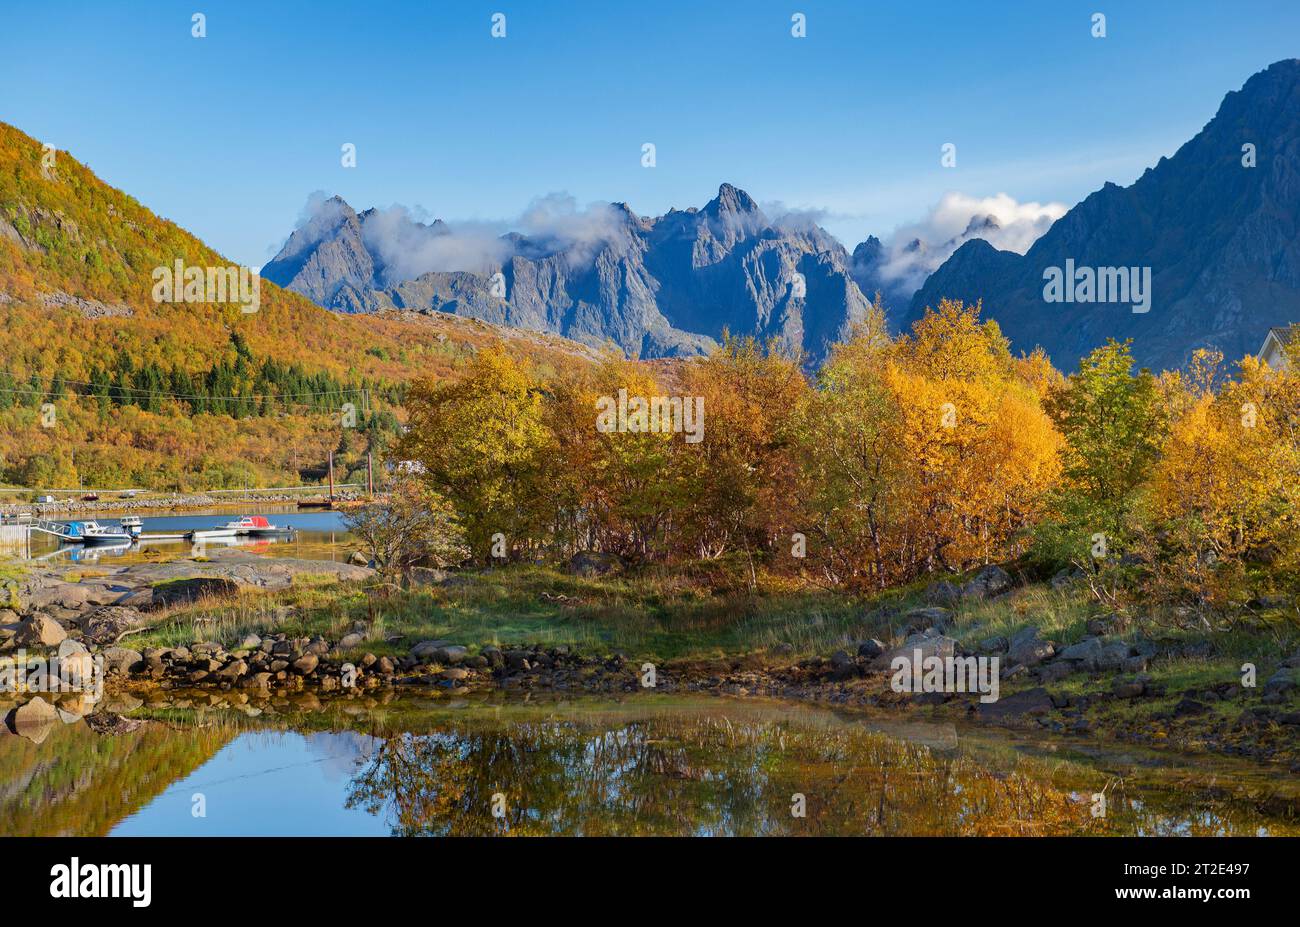 Wunderschöne Landschaft Norwegens mit Bäumen mit gelben Blättern, die sich im Wasser eines Sees spiegeln, und Berggipfeln im Hintergrund Stockfoto